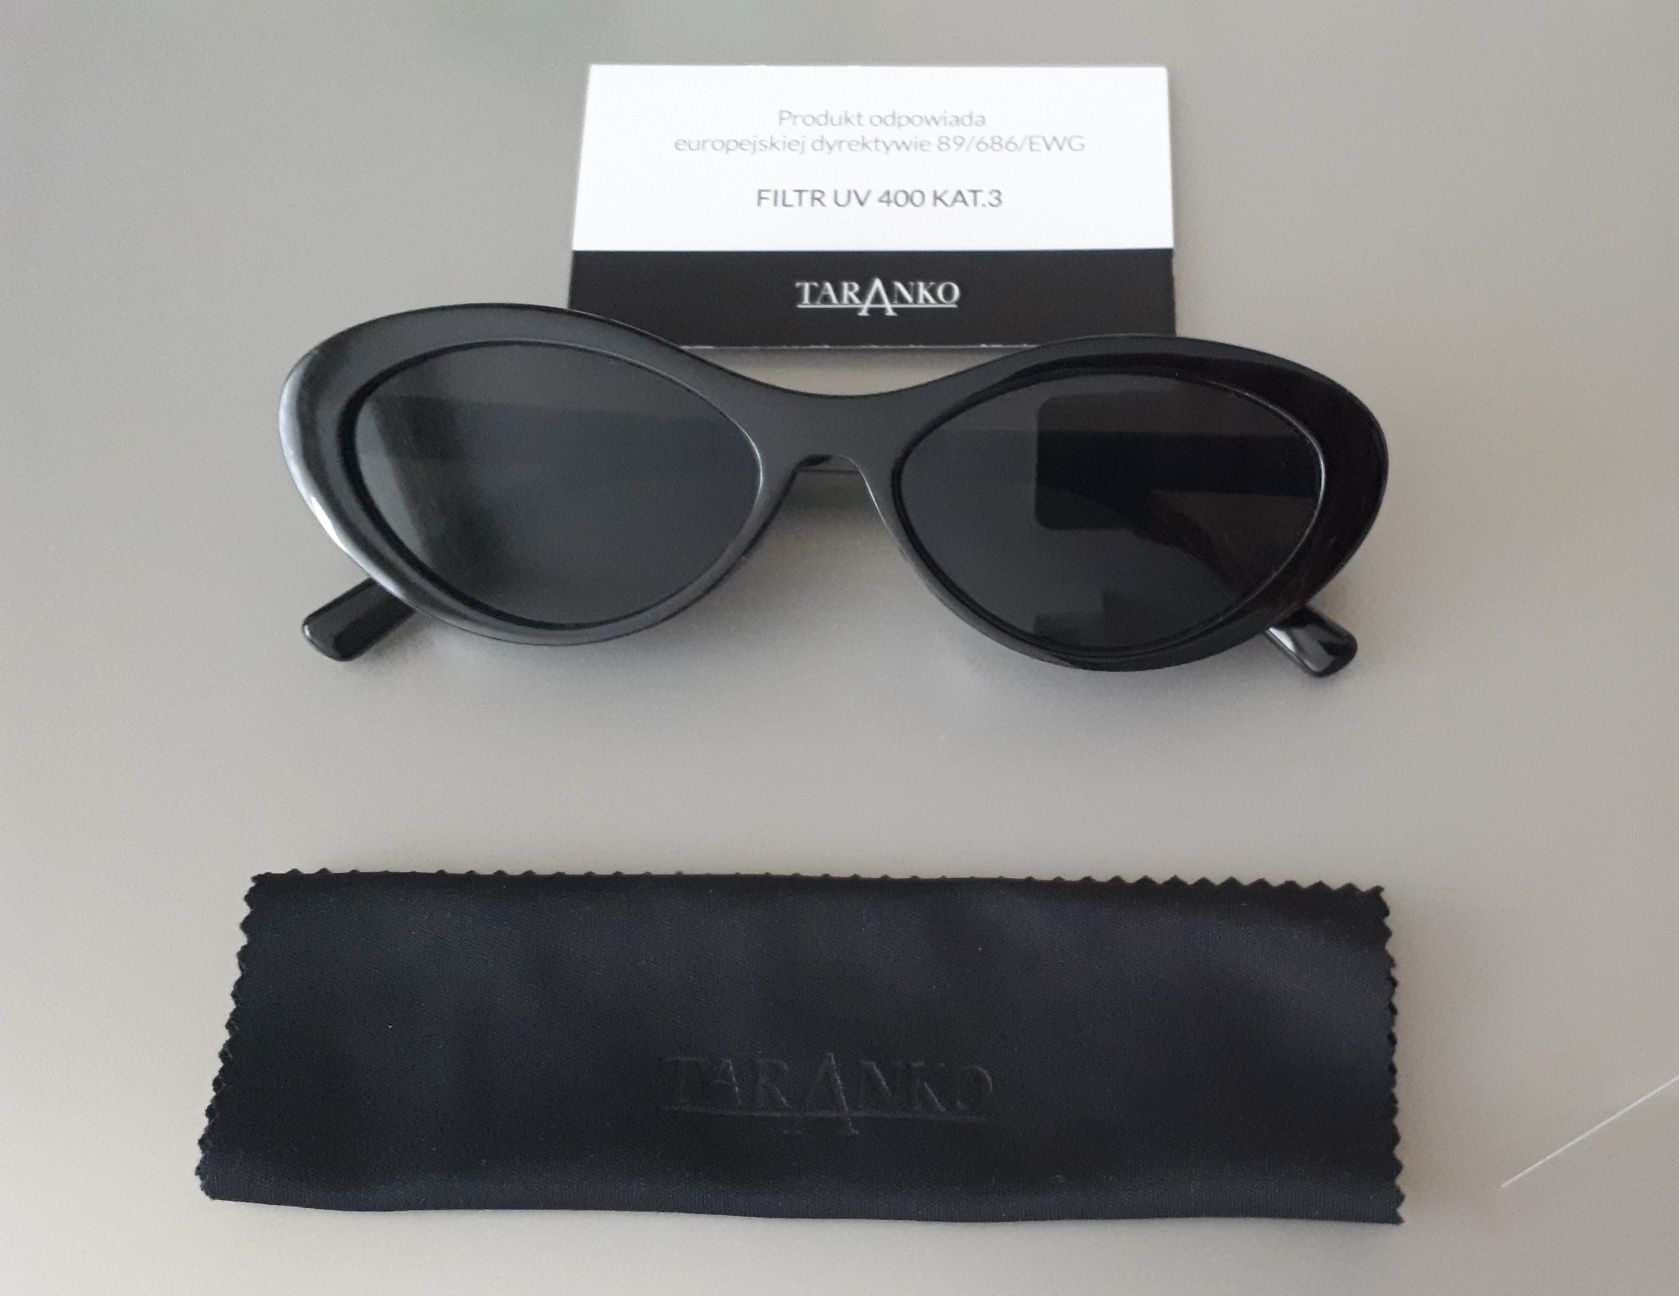 Okulary przeciwsłoneczne Taranko z etui nowe, filtr UV 400 kat. 3